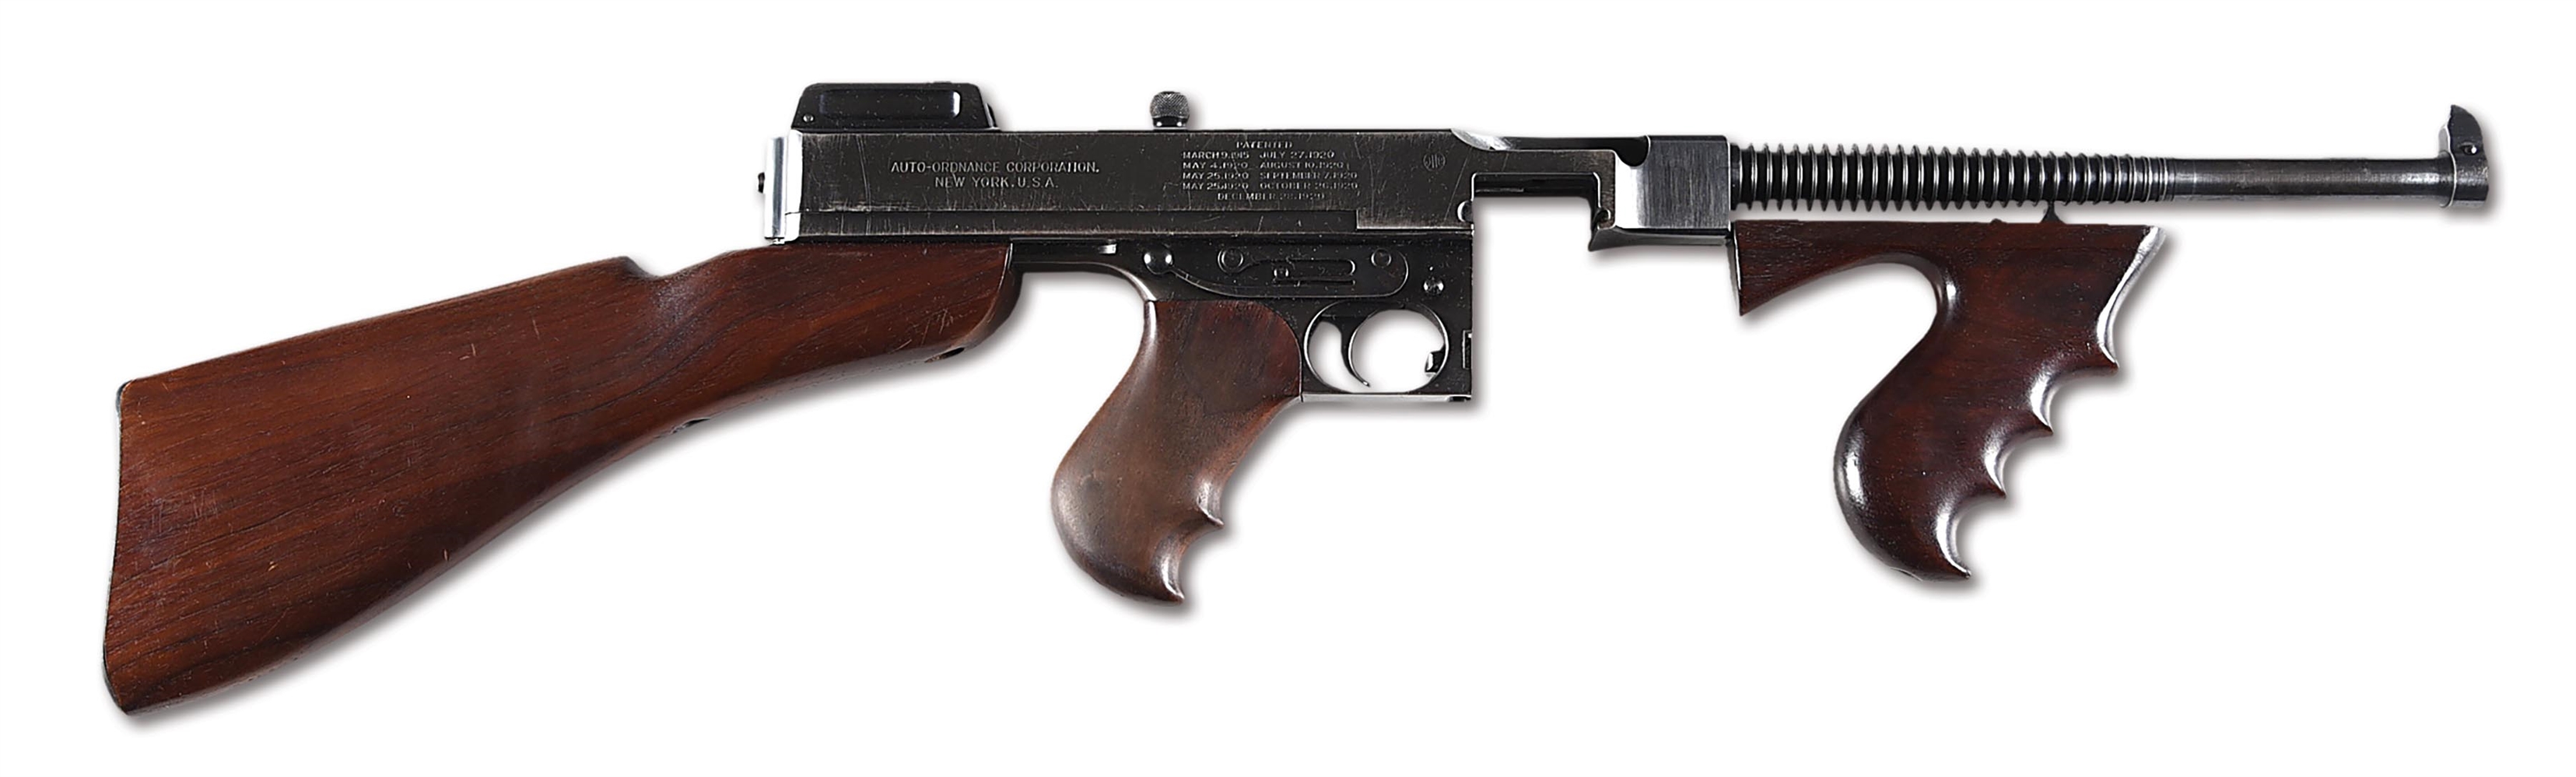 (N) HIGH CONDITION EARLY 3-DIGIT COLT 1921A THOMPSON MACHINE GUN (CURIO & RELIC).